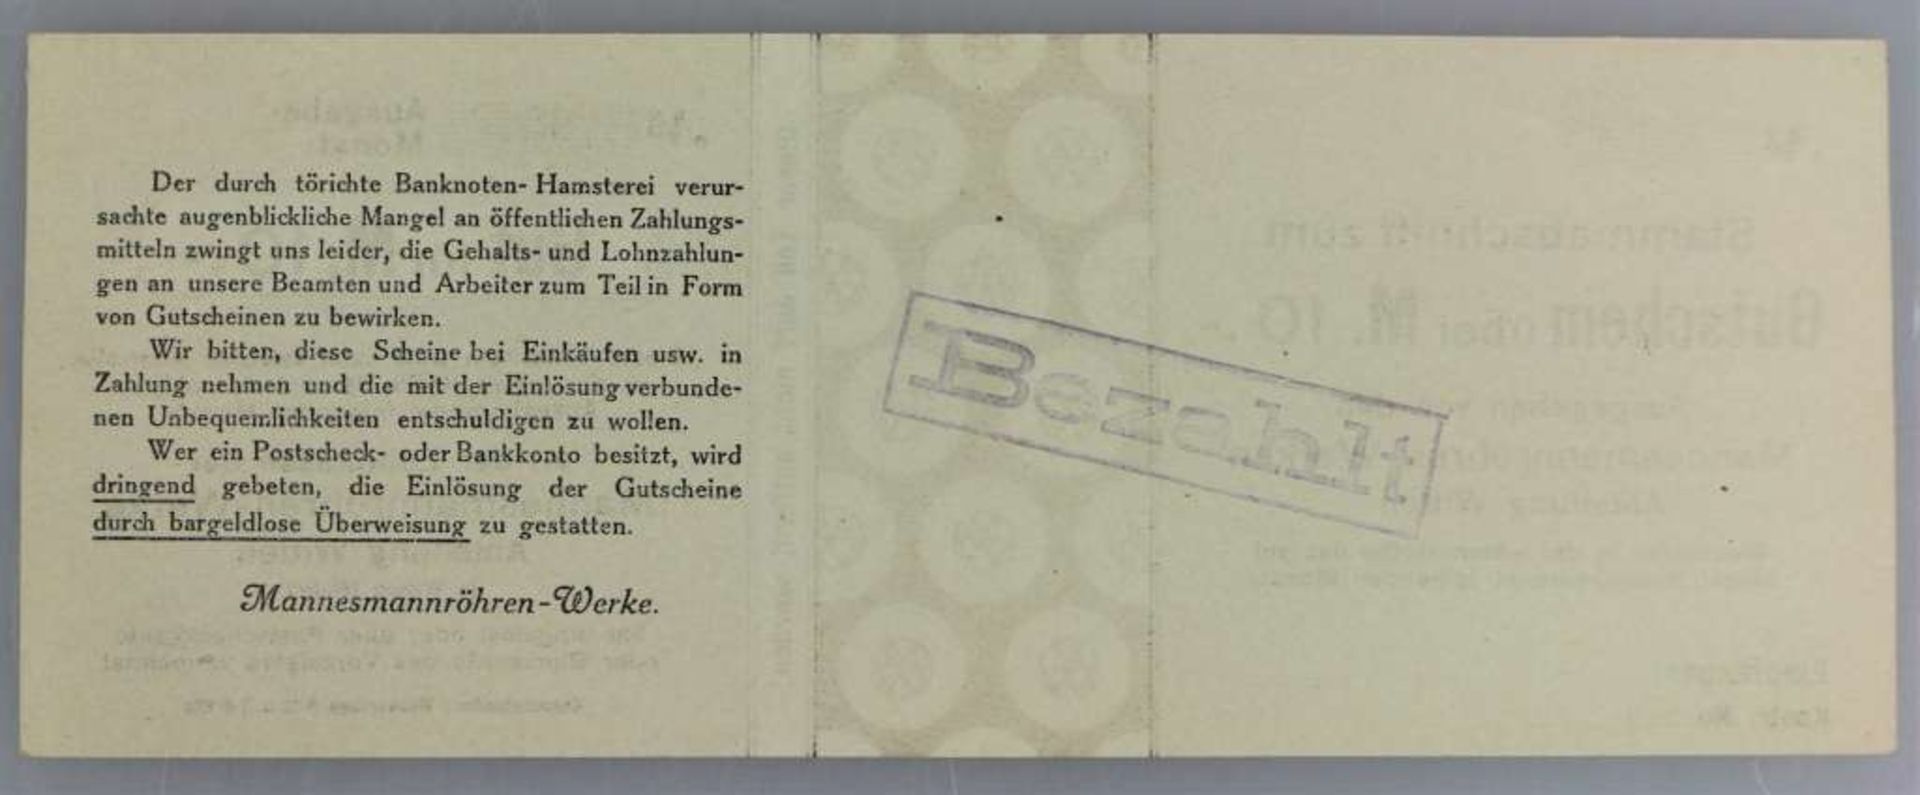 Mannesmannröhren-Werke, 6x 5, 6x 10 und 6x 20 Mark, o.D., entwertet, Konvolut insg. 18 Stück, Abt. - Bild 3 aus 3